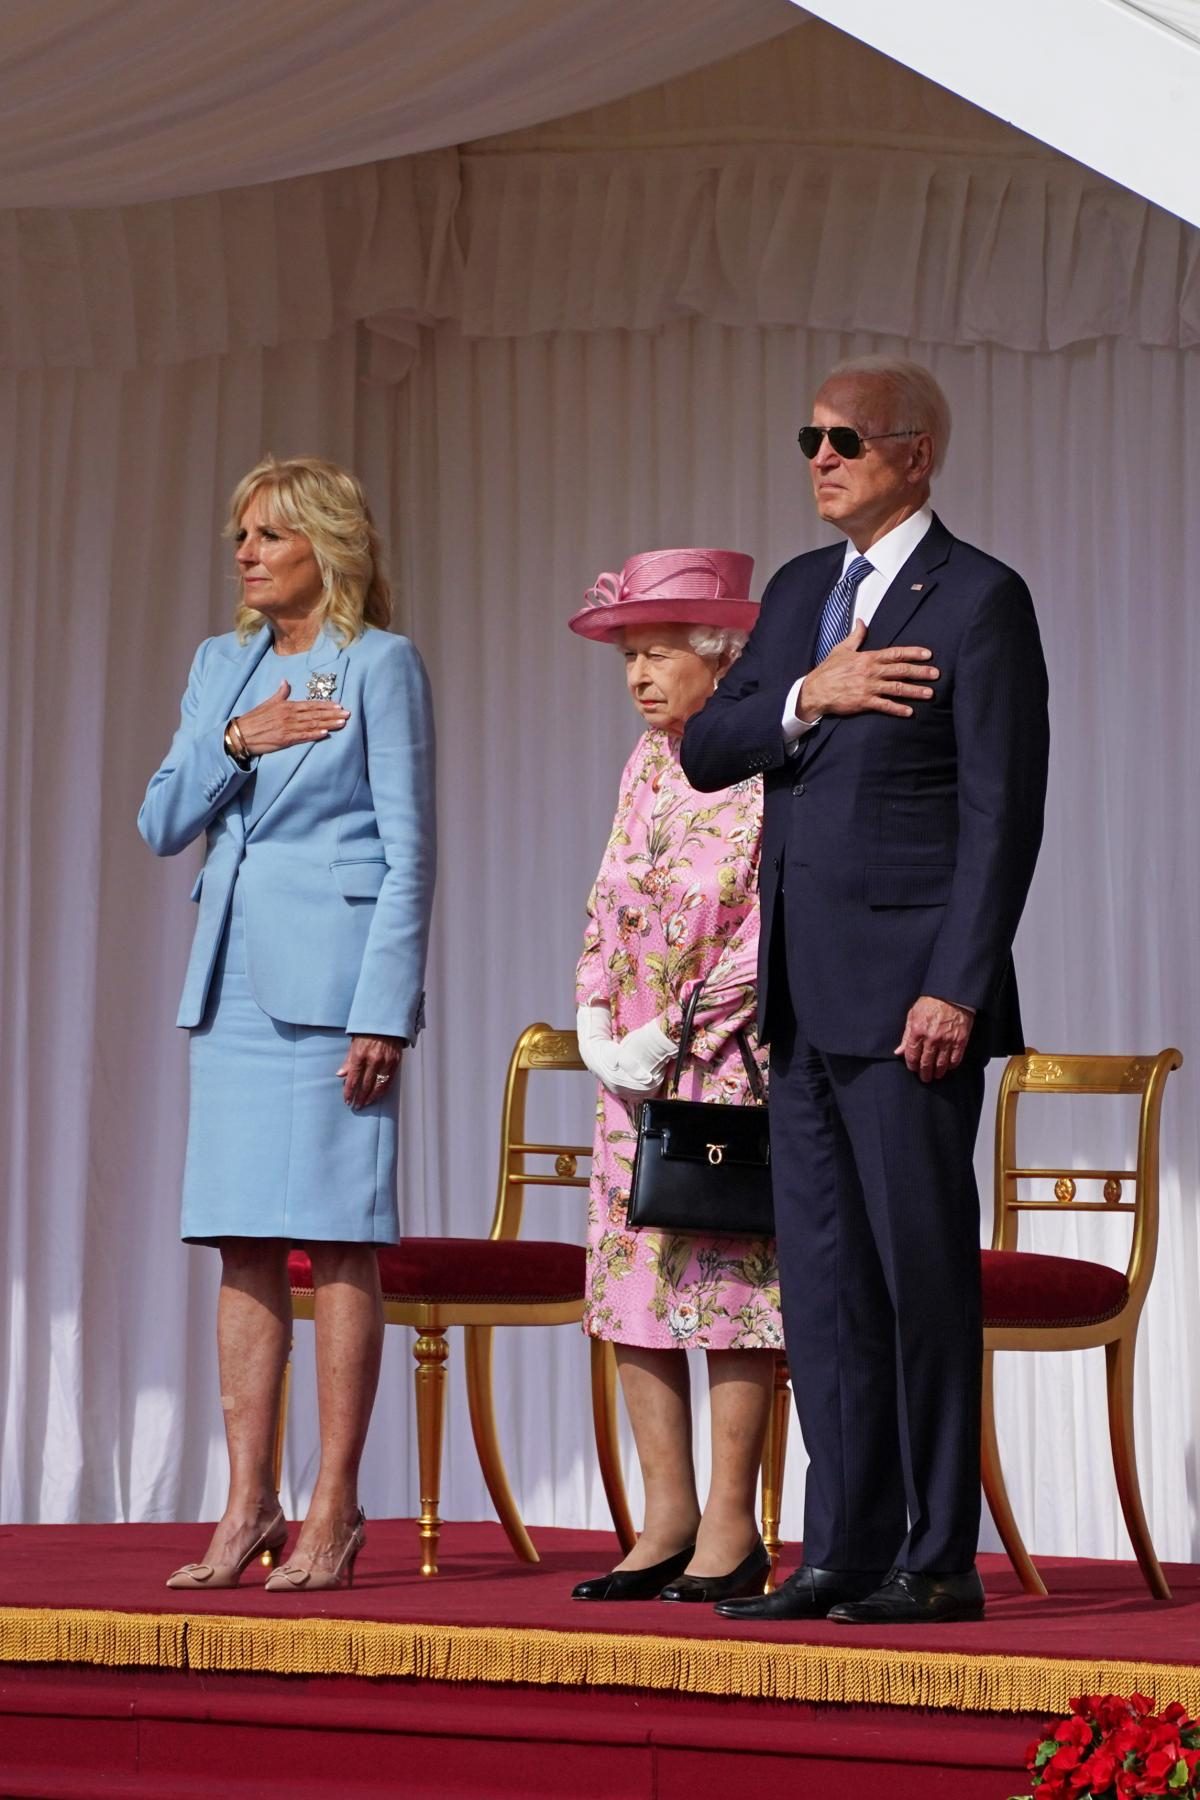 Pictures Queen Elizabeth II meets President Biden, the First Lady 13 June 2021